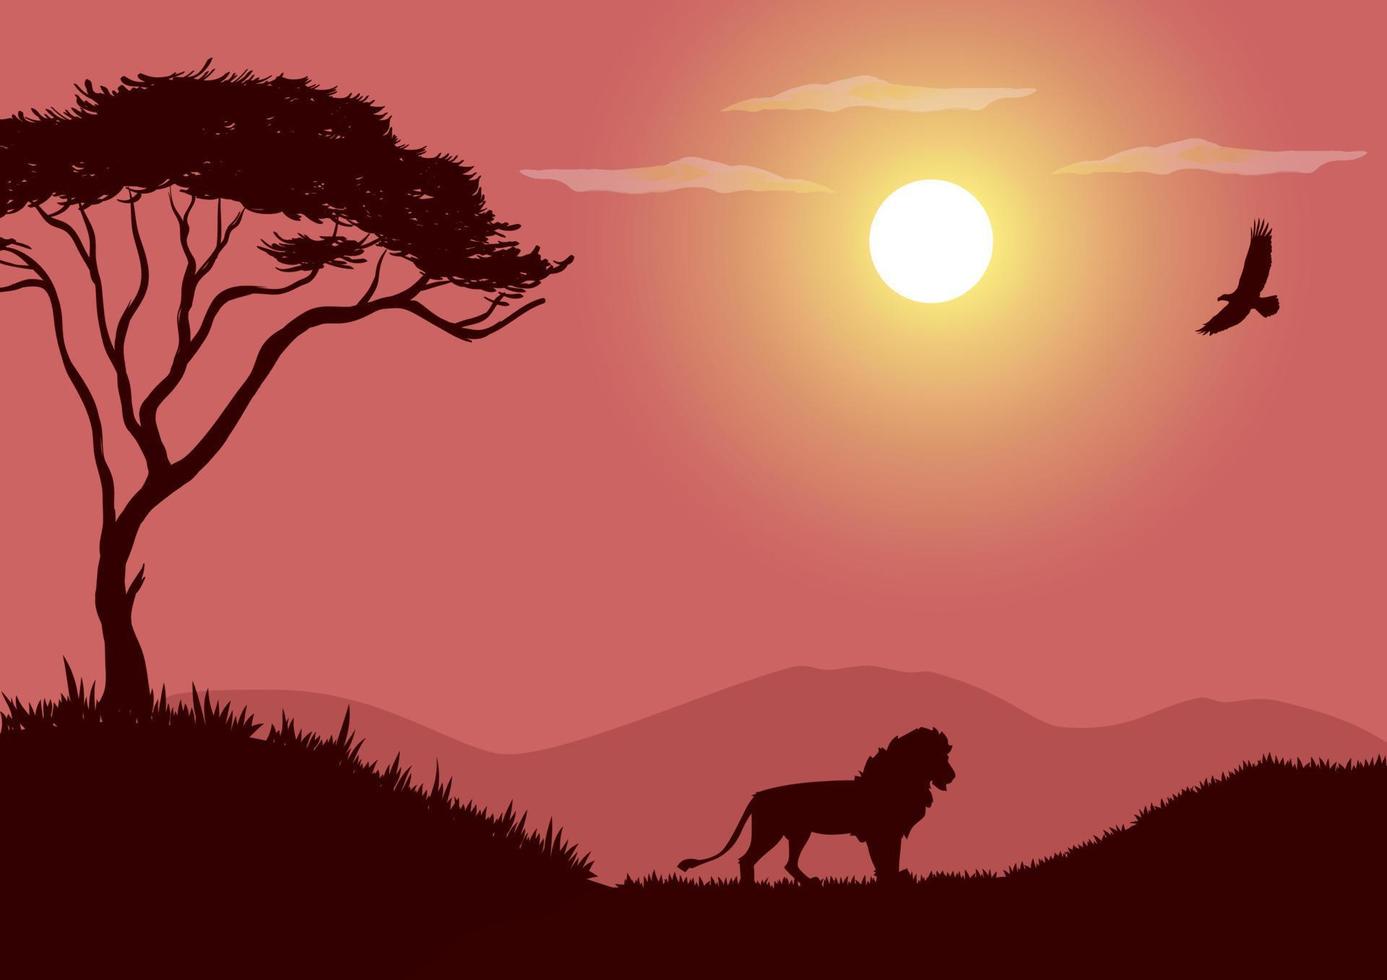 Afrikaanse dieren in het wild vector met roze silhouet